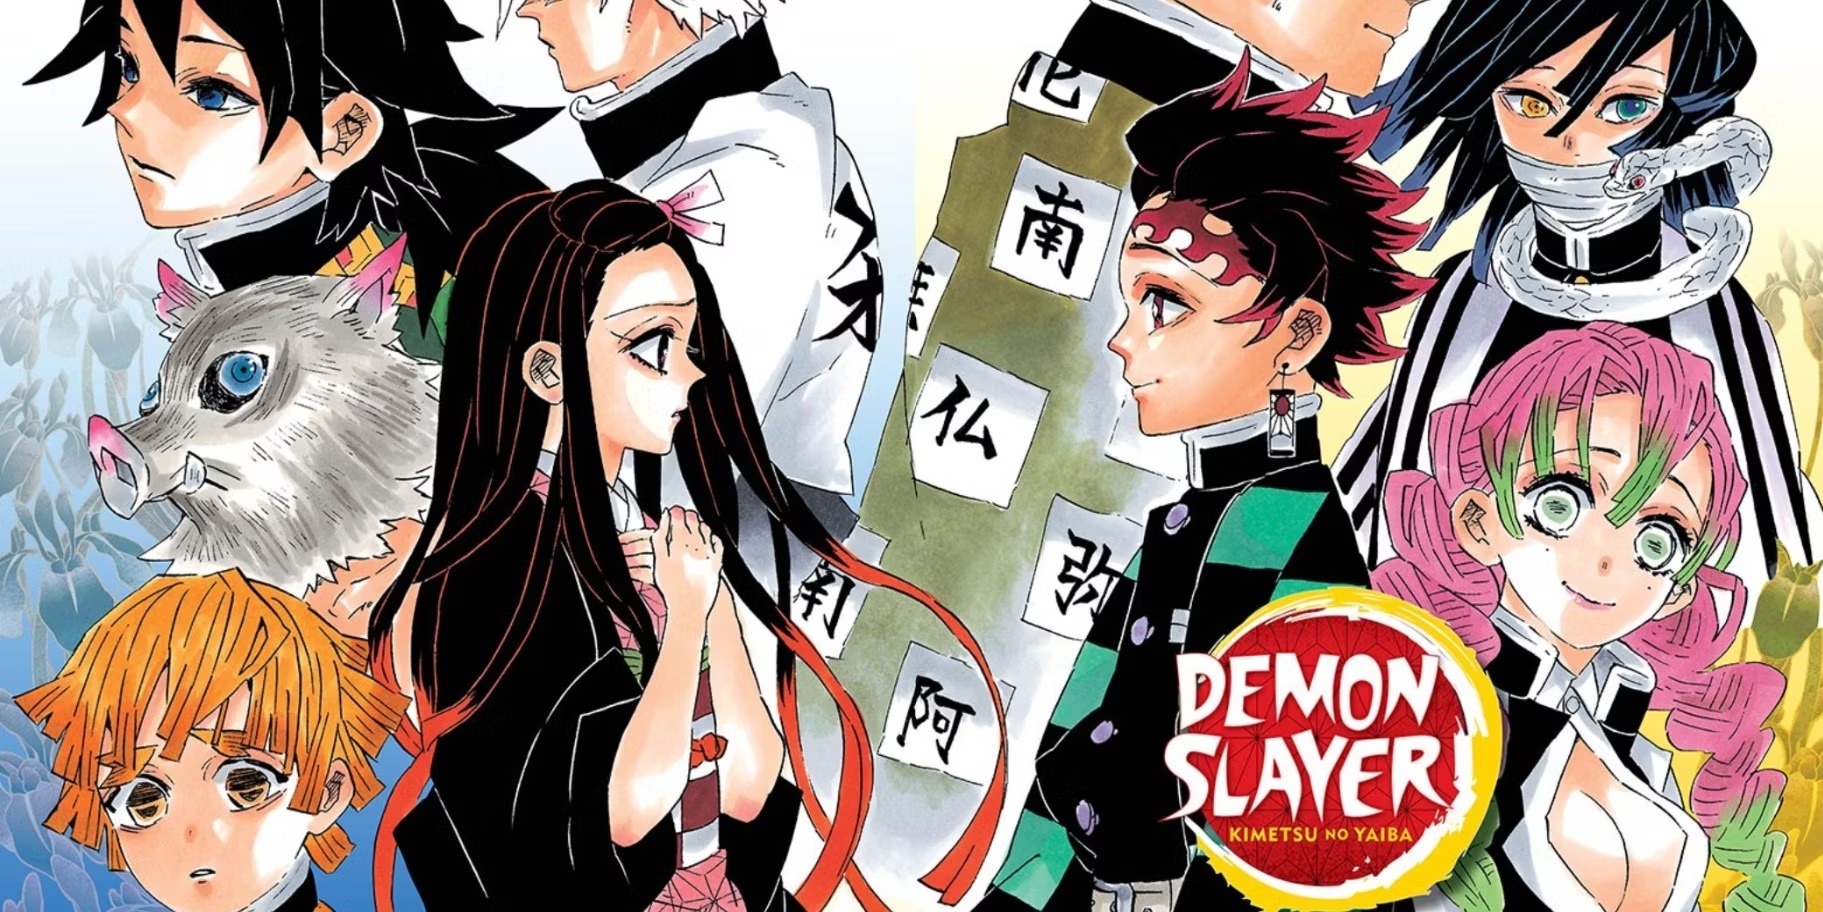 Notícias sobre Animes & Mangás - A primeira temporada de Demon Slayer:  Kimetsu no Yaiba estará disponível com DUBLAGEM no dia 1° de Abril na  Netflix. ~Junior #kimetsunoyaiba #demonslayer #netflix